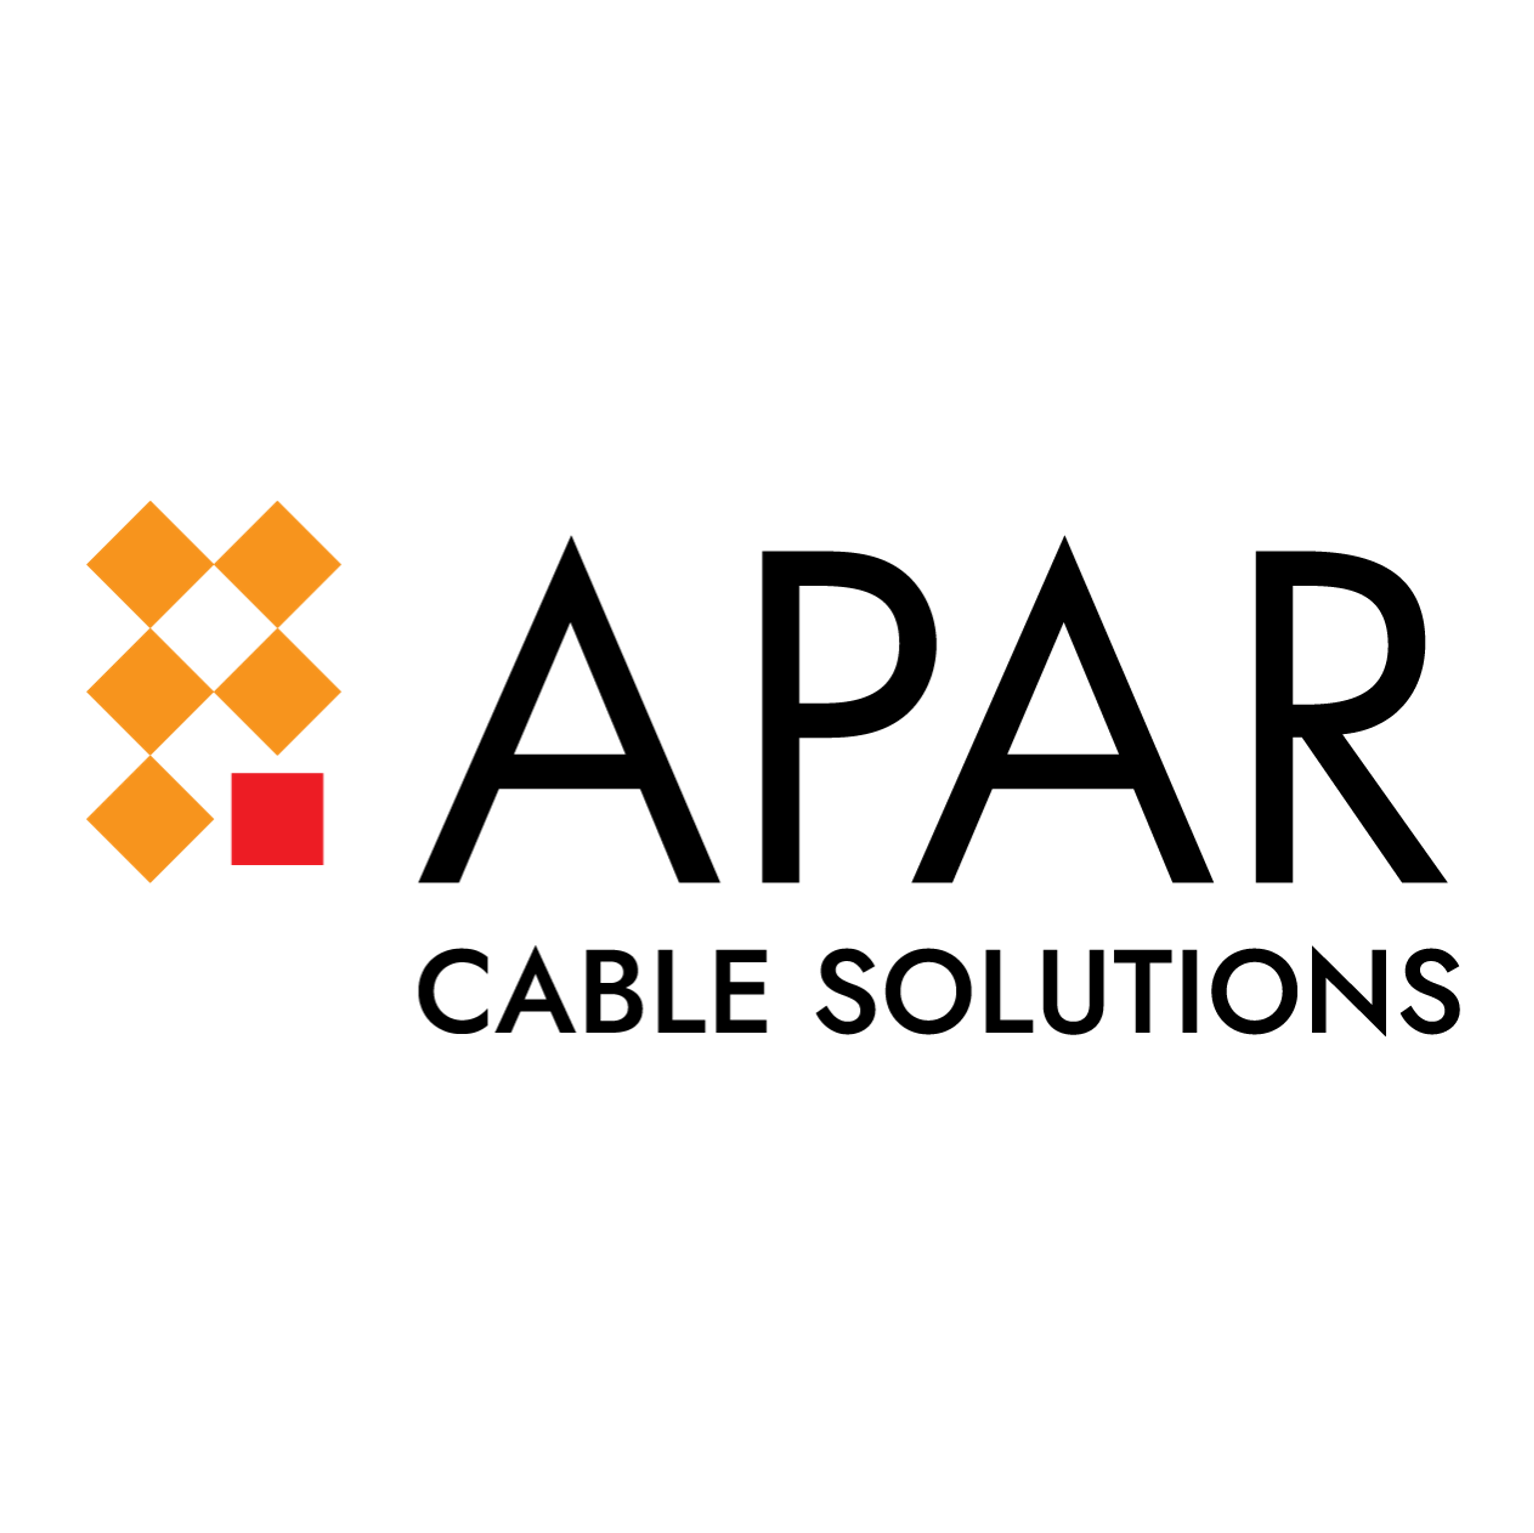 APAR Cable Solutions